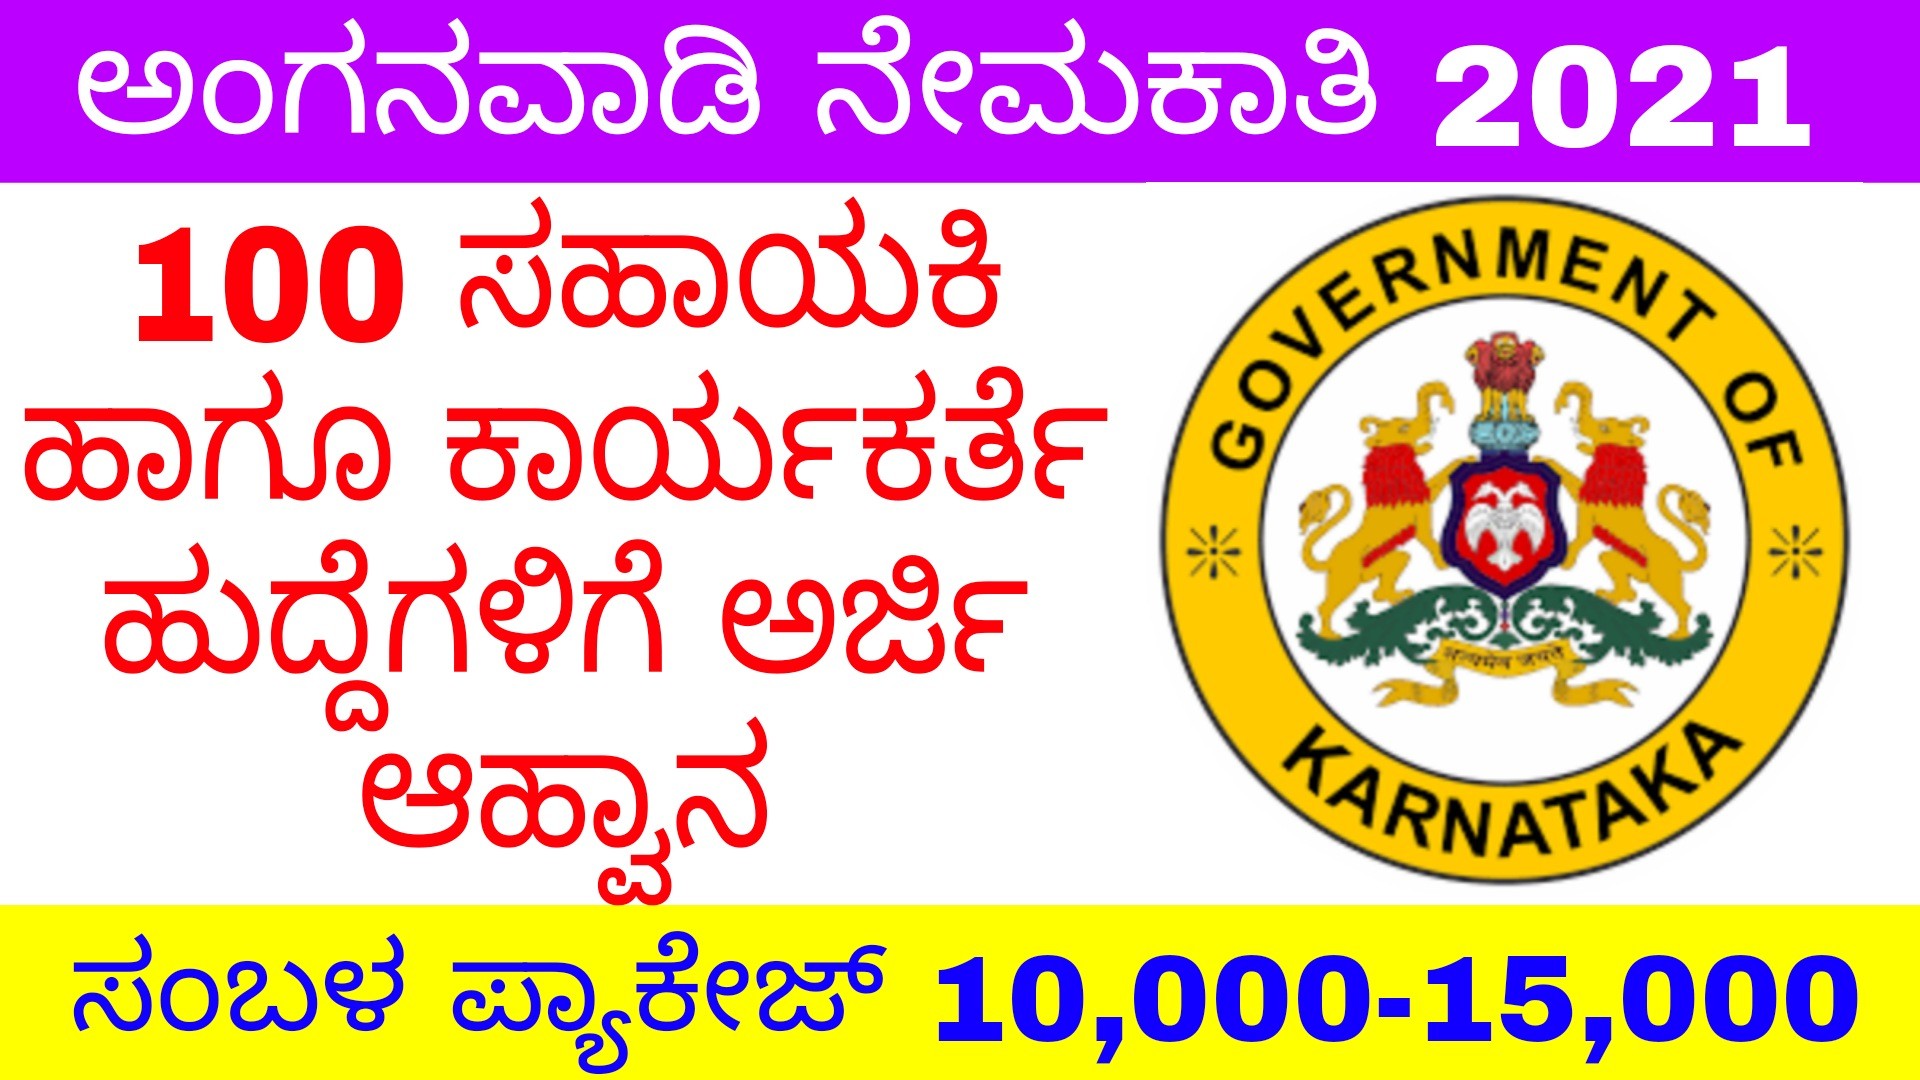 WCD notifications 2021-100 ಅಂಗನವಾಡಿ ವರ್ಕರ್ ಹುದ್ದೆಗಳಿಗೆ ಅರ್ಜಿ ಆಹ್ವಾನ.